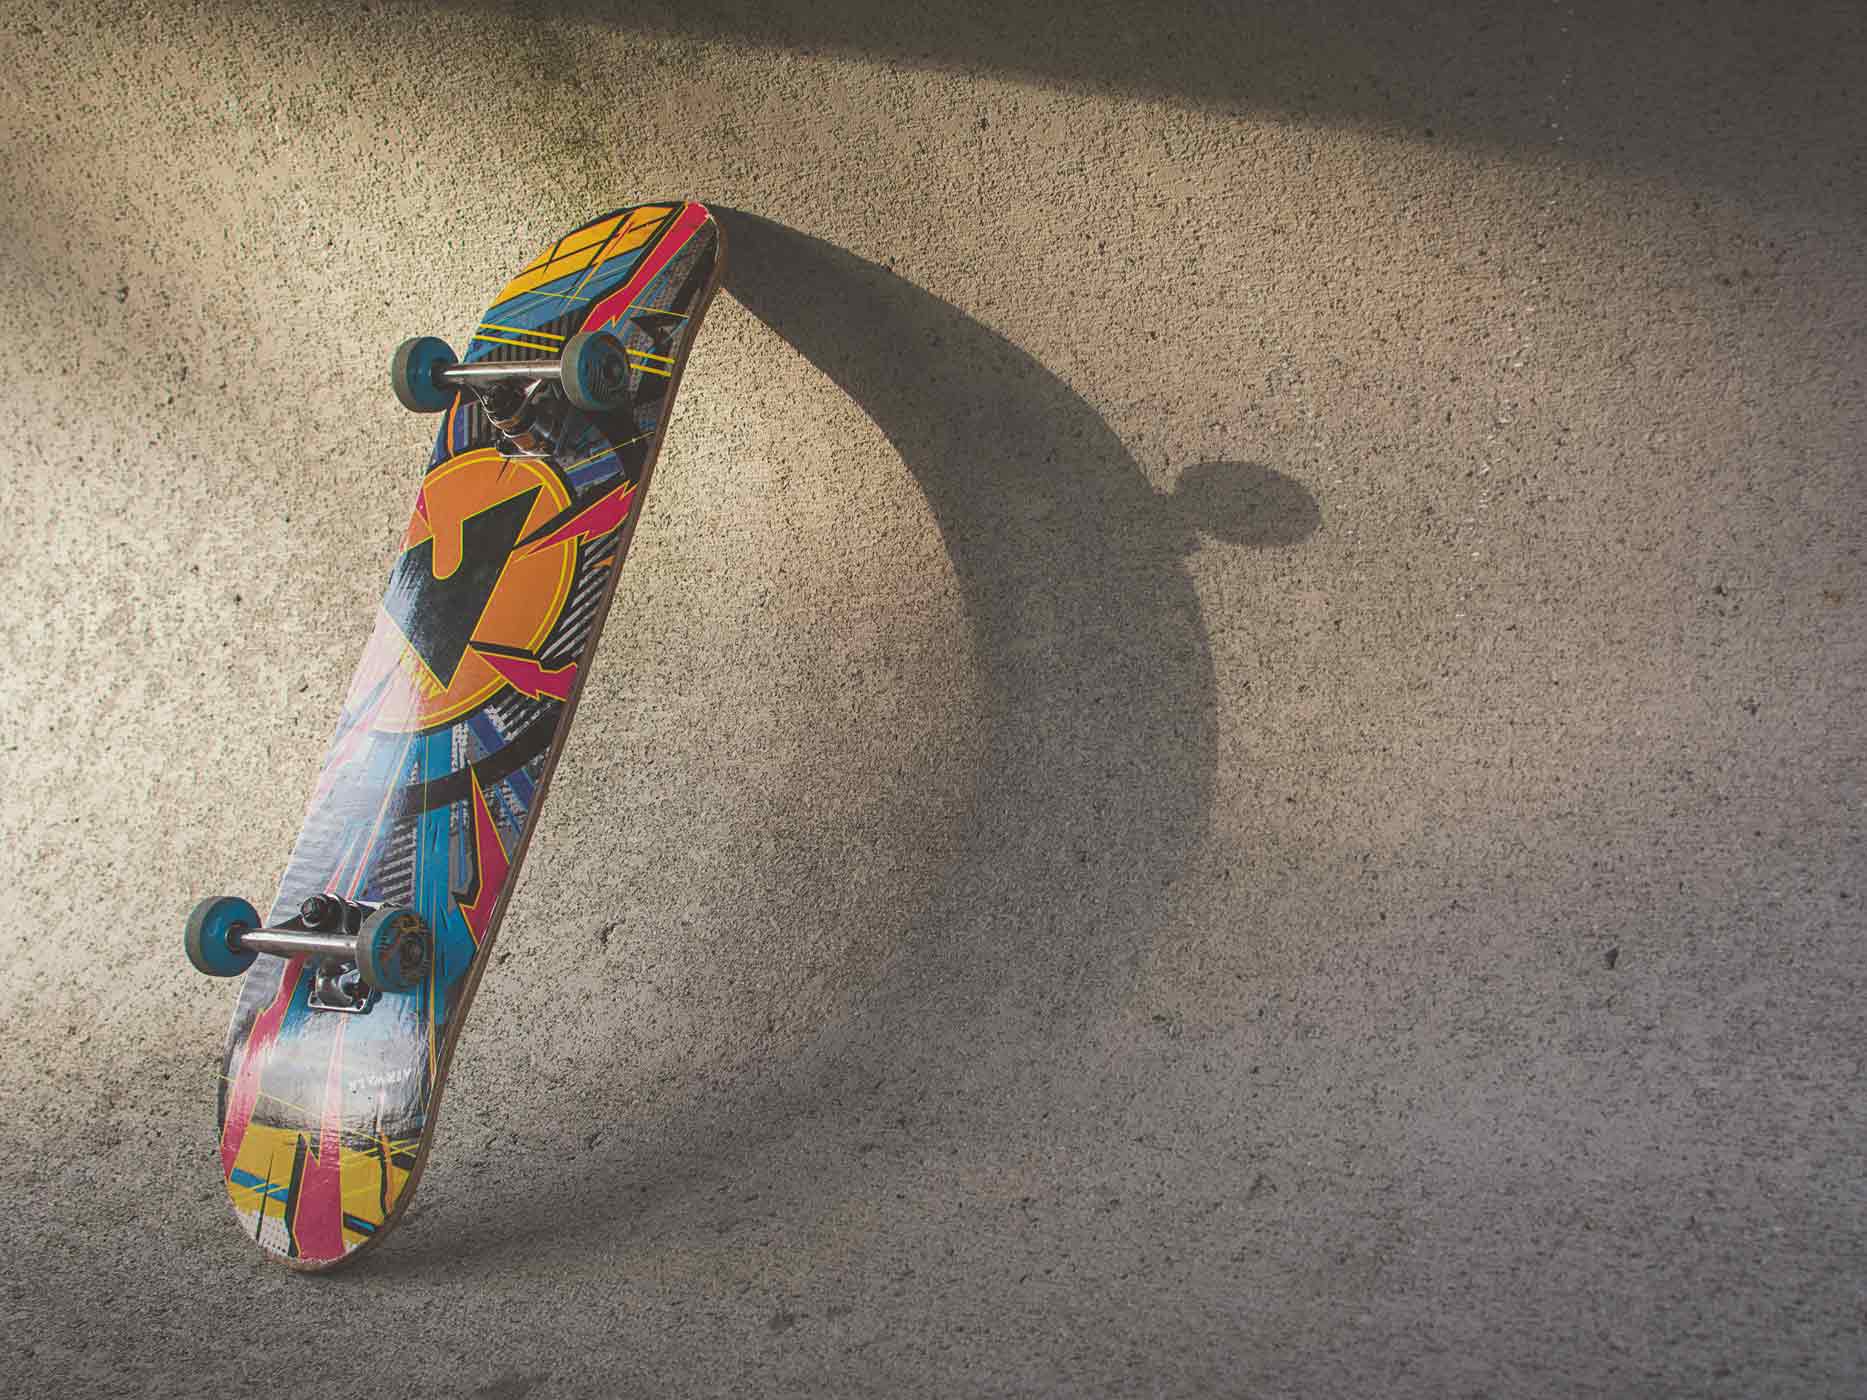 Buntes Skateboard lehnt in einer Bowl mit der Oberseite an der Wand